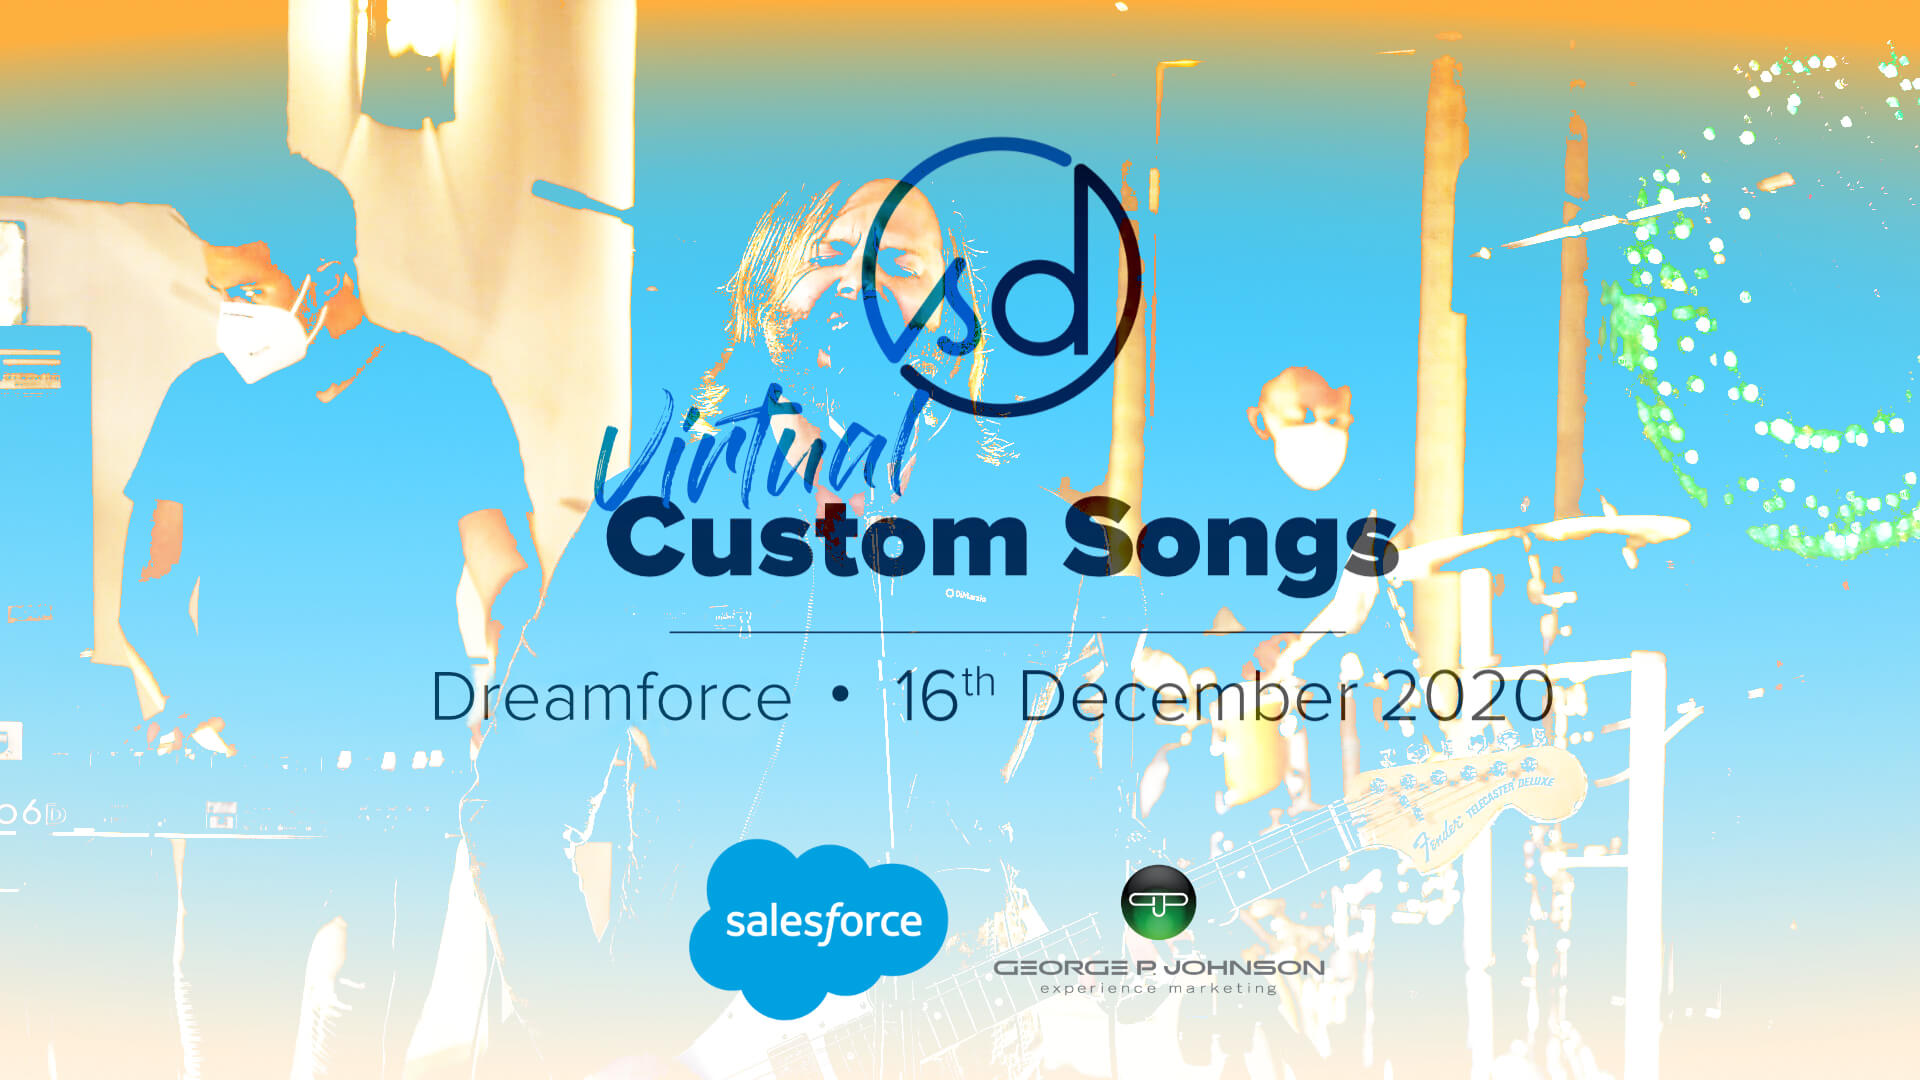 Dreamforce + Virtual Custom Songs